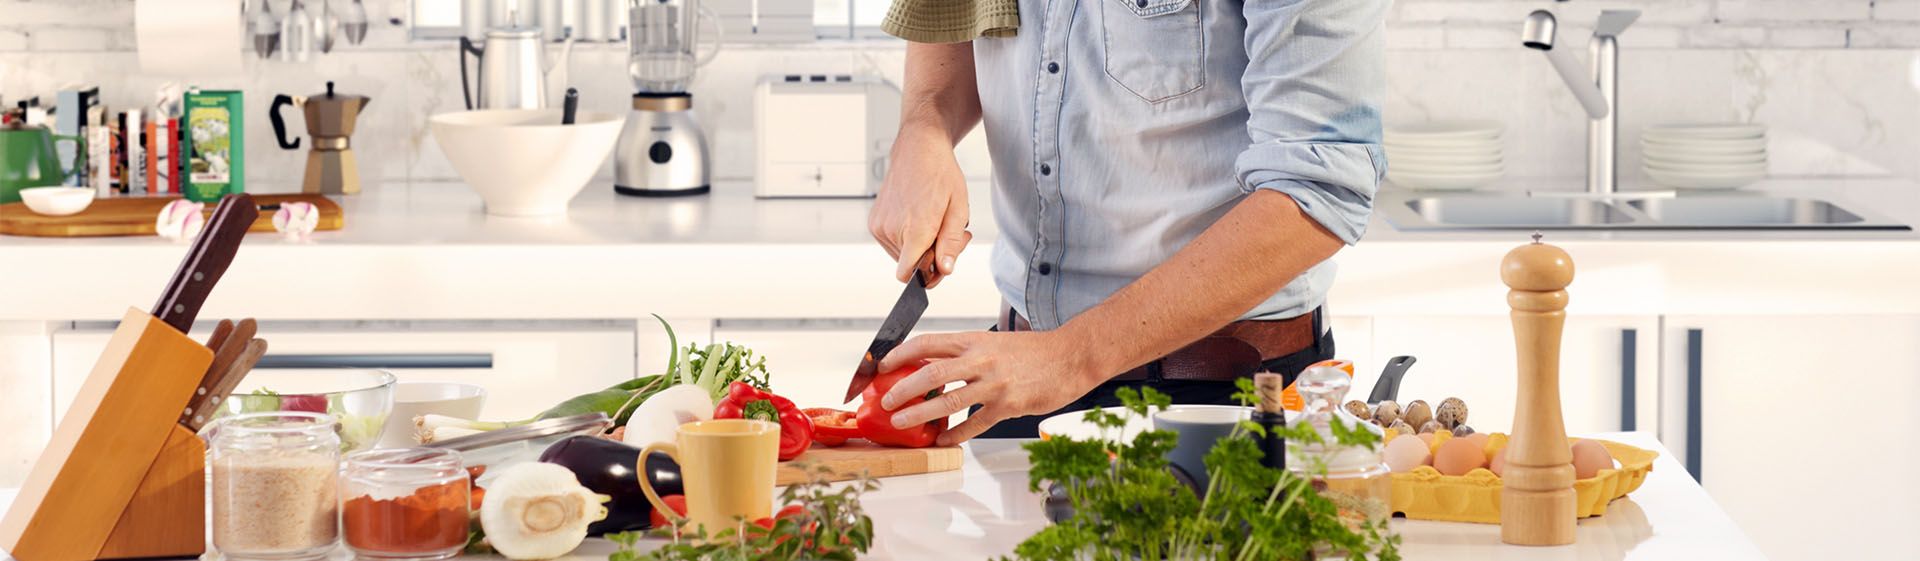 Capa do post: Cozinha moderna: dicas para montar um ambiente smart